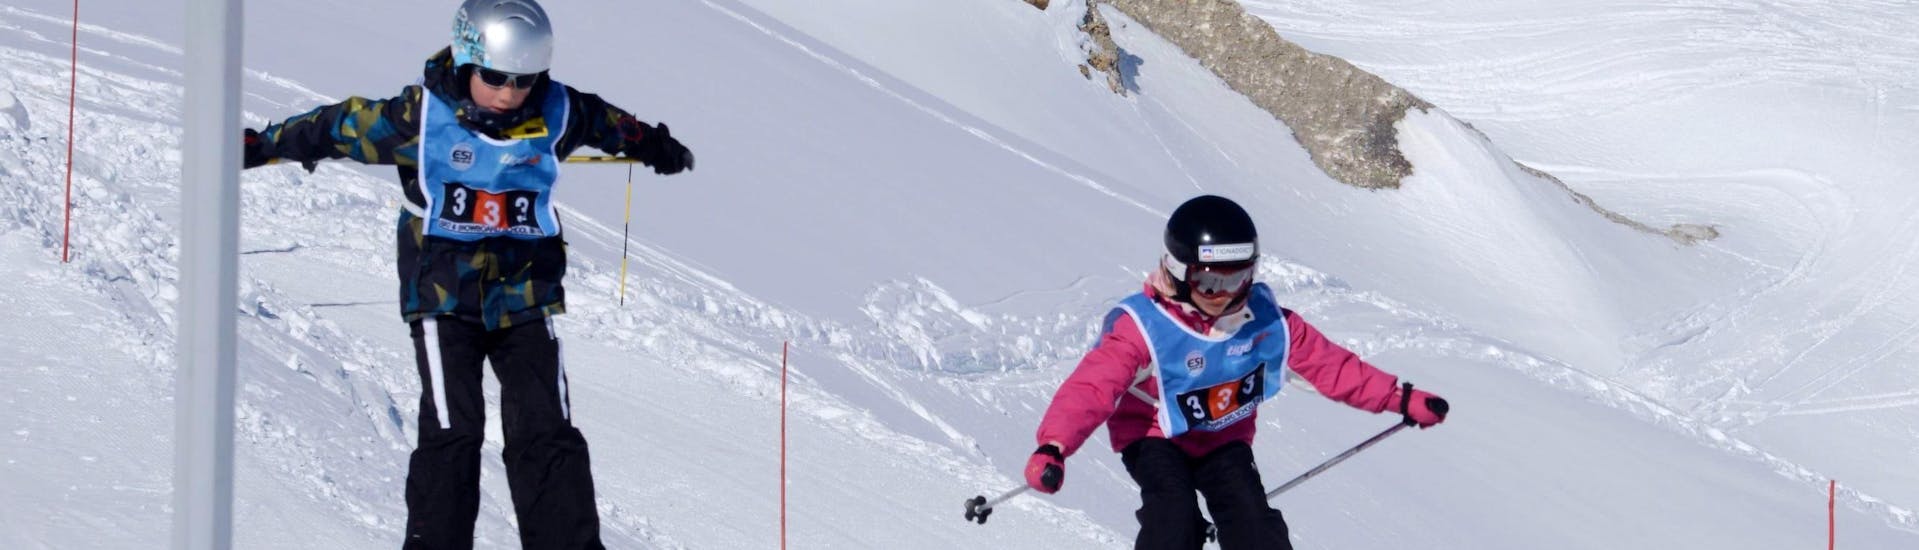 Twee kinderen genieten van hun Privé Skilessen voor Kinderen van Alle Niveaus met École de Ski 333.